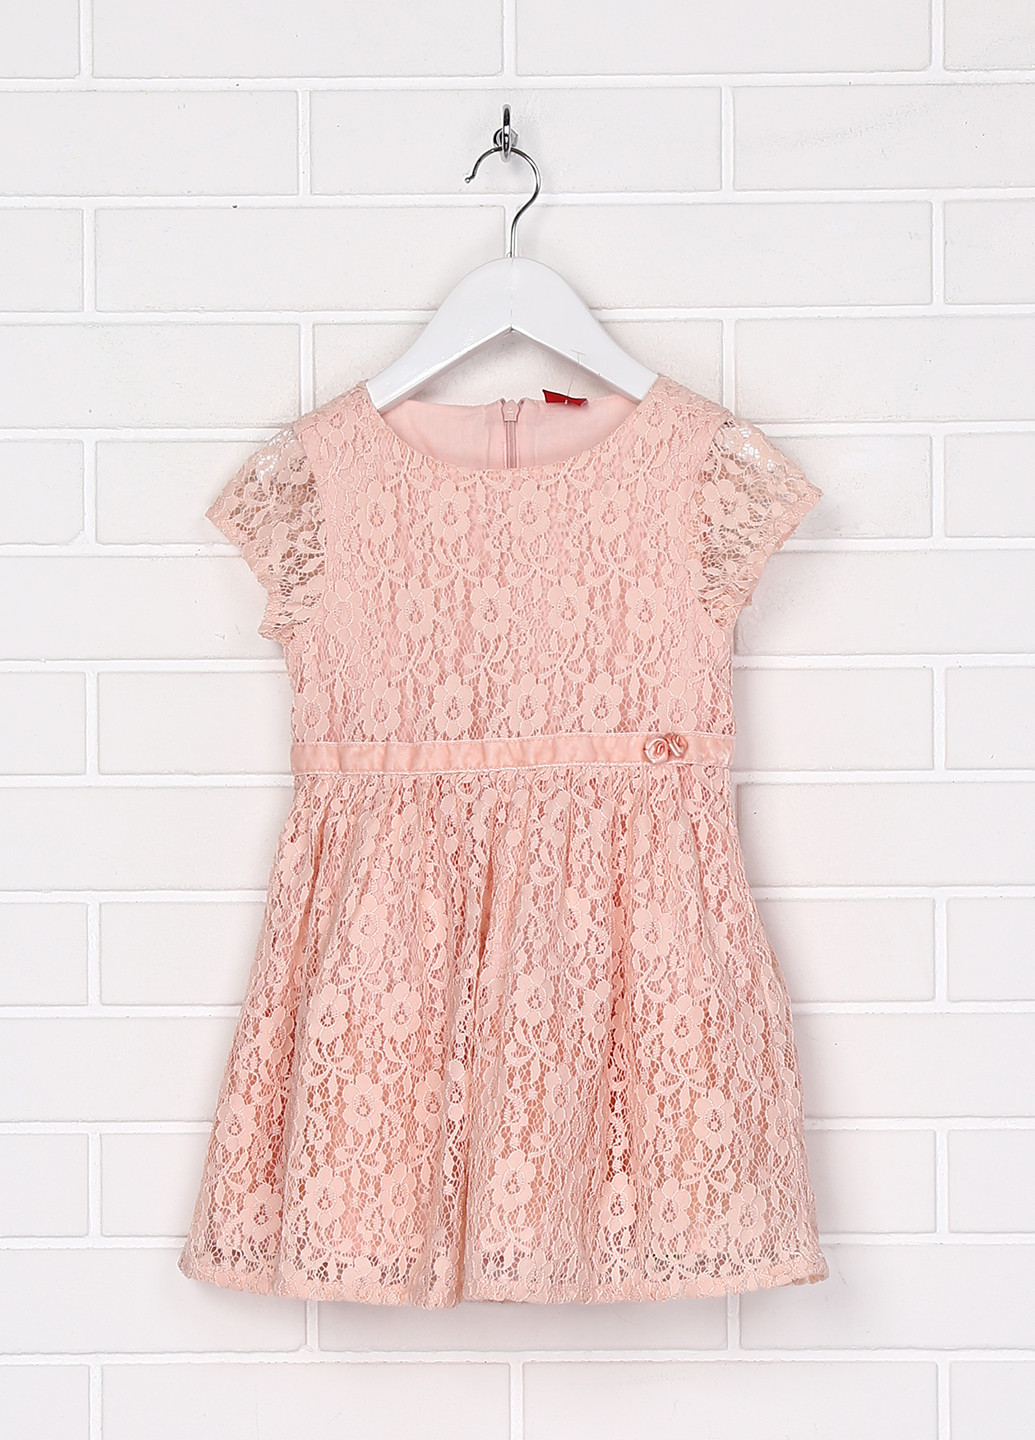 Персикова святковий плаття, сукня бебі долл S.Oliver однотонна